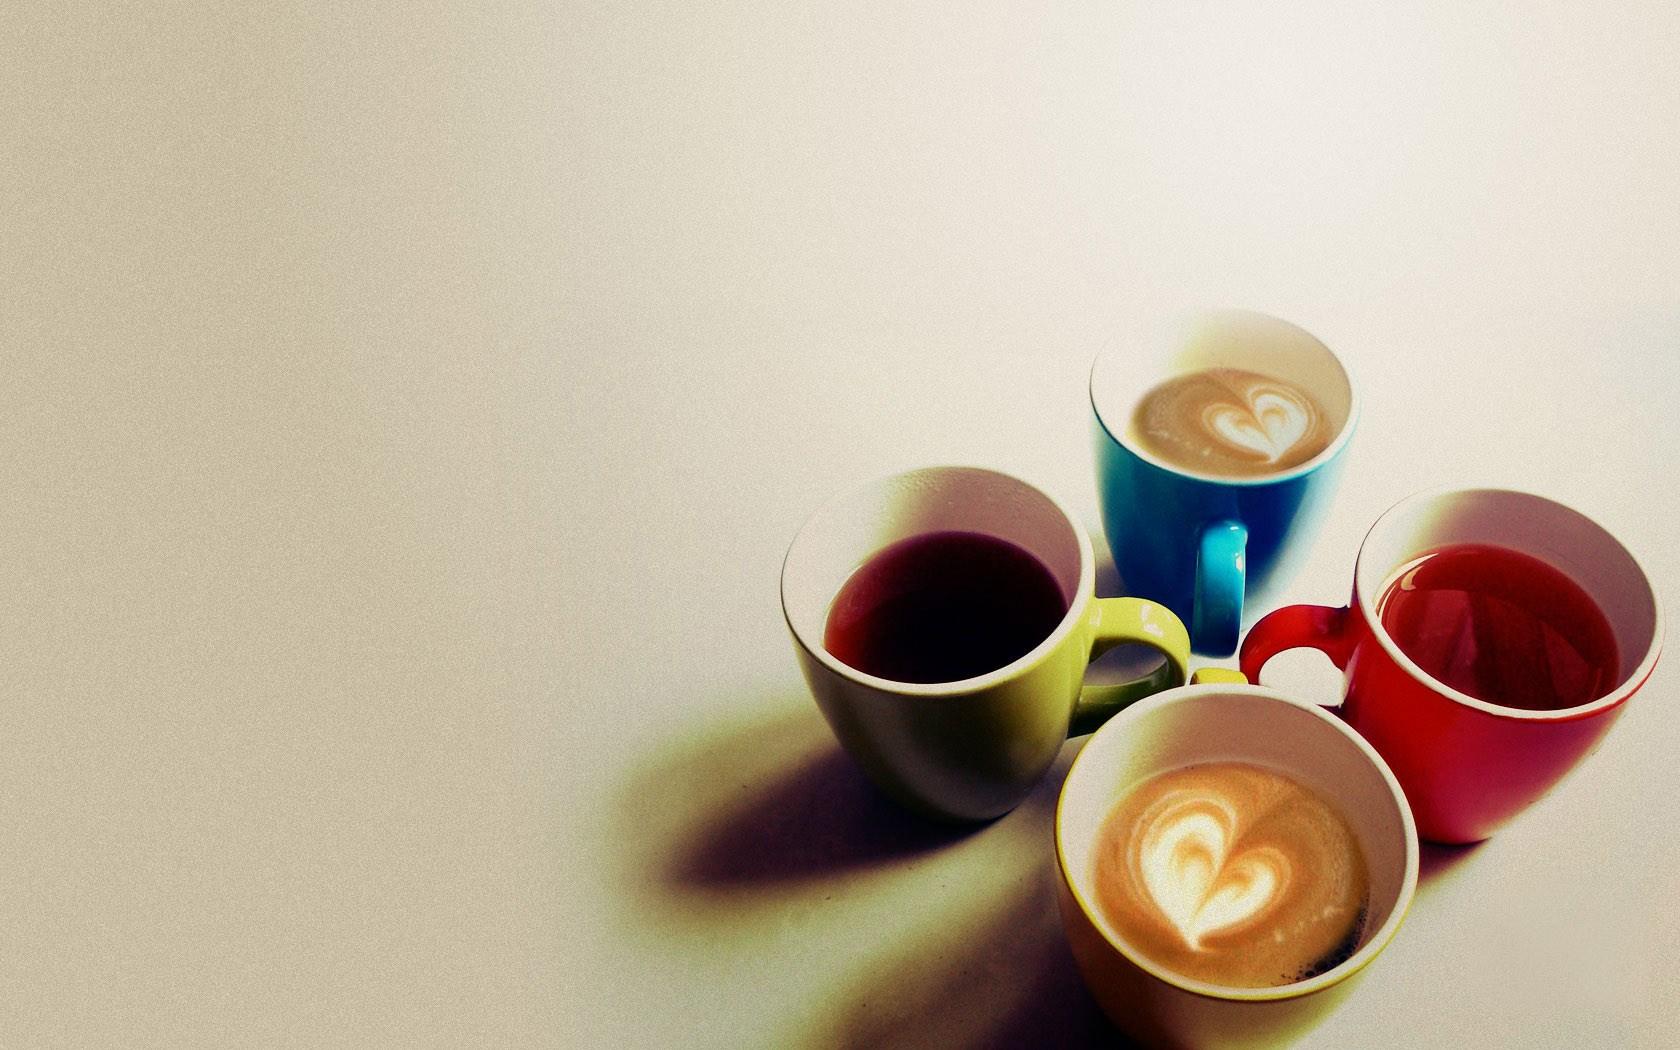 护眼 咖啡杯 浪漫 书 咖啡 杯子 早晨 设计素材 6K背景图片壁纸(小清新静态壁纸) - 静态壁纸下载 - 元气壁纸